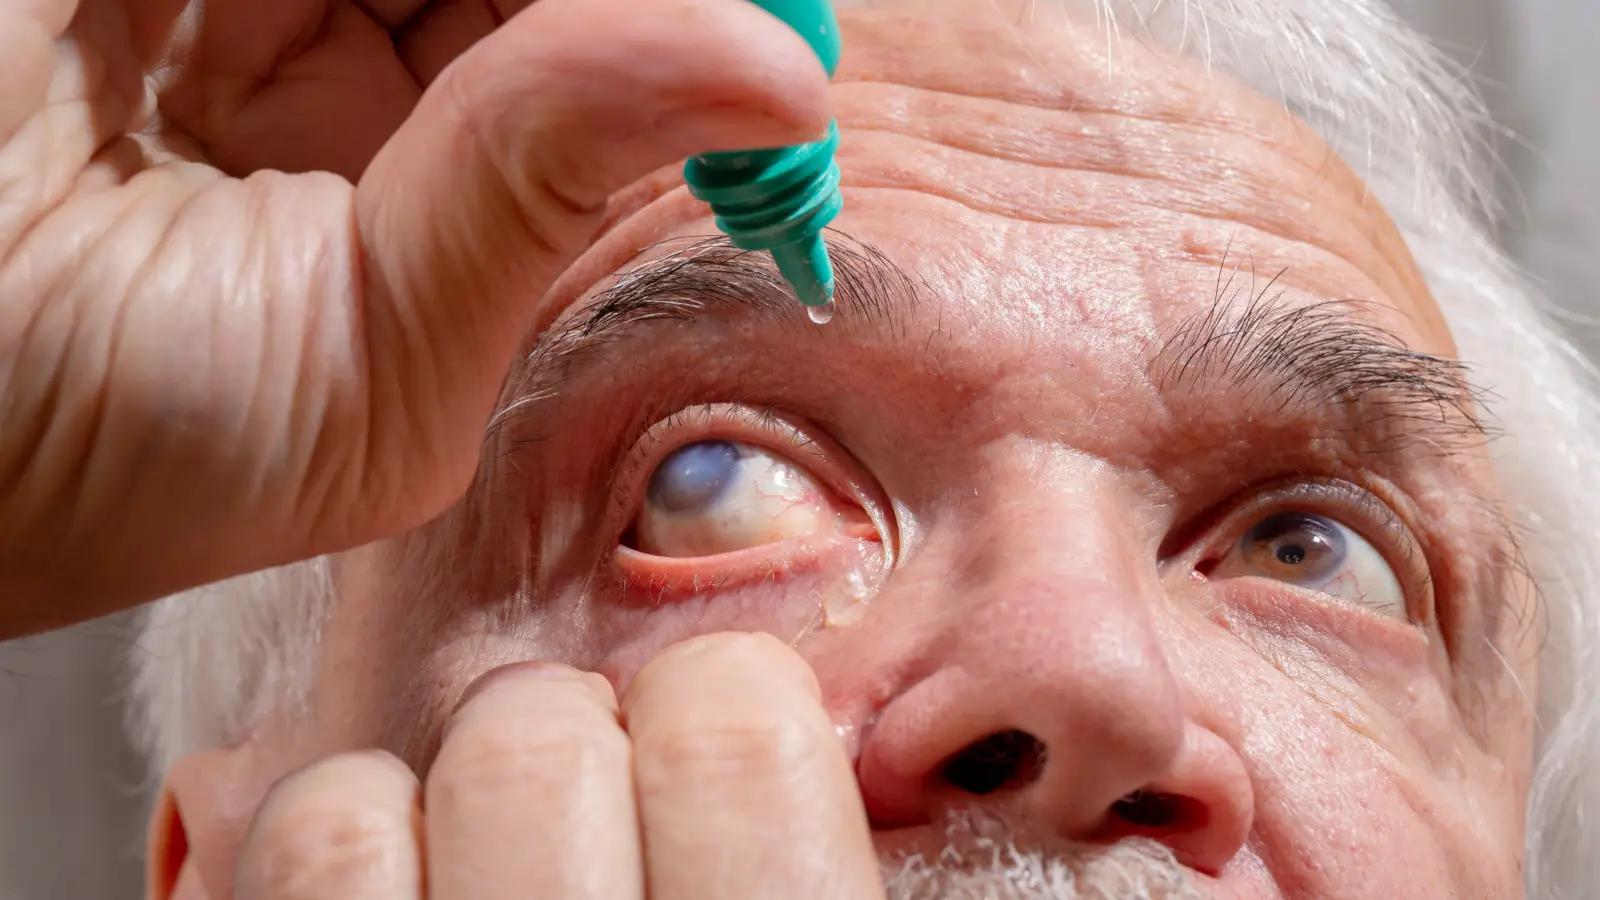 ما هي طرق علاج مرض المياه الزرقاء في العين؟